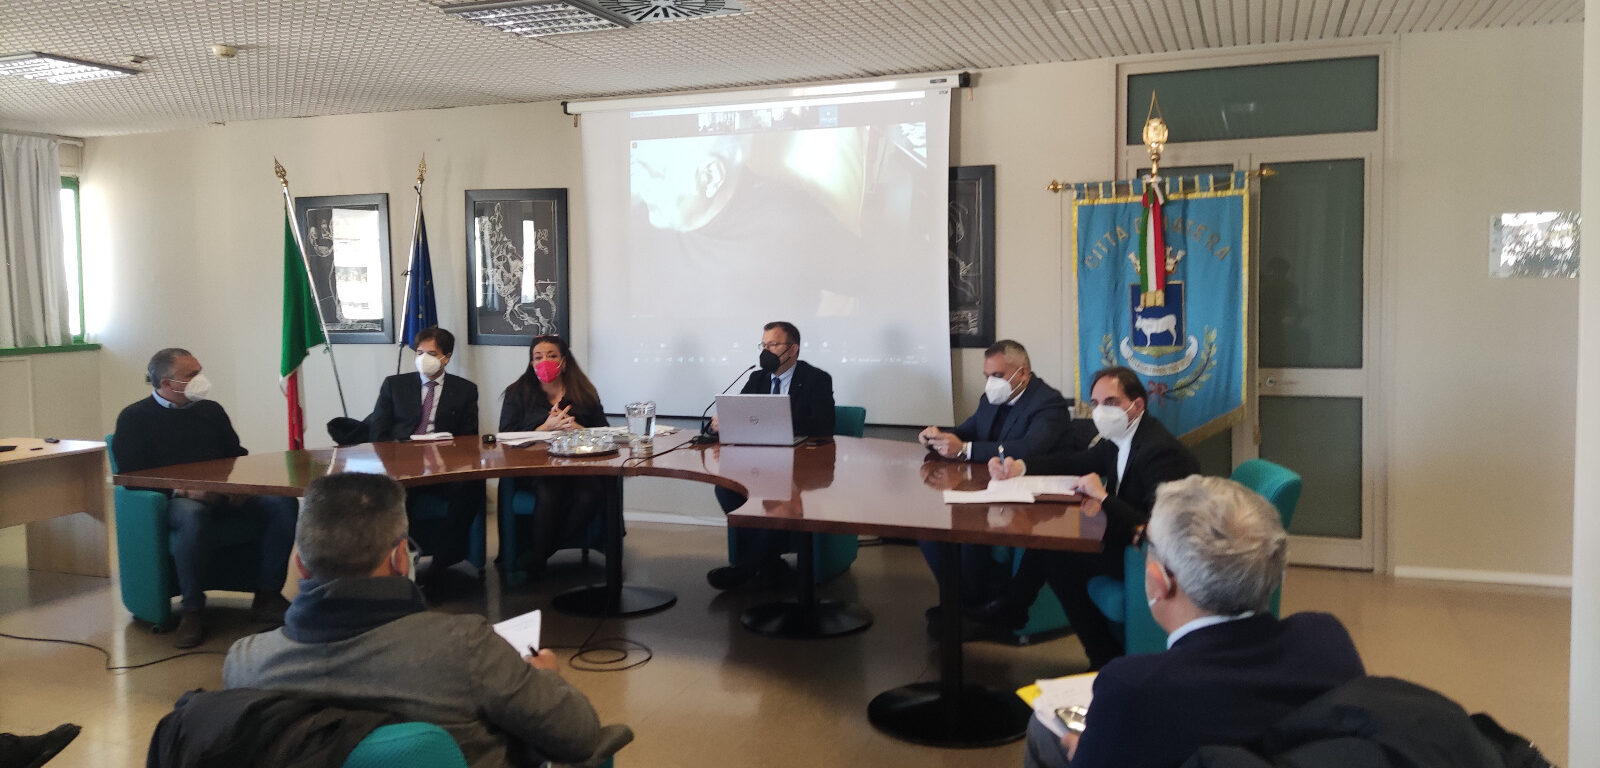 Sanità, a Matera la conferenza dei Sindaci: sei nuovi presidi sanitari previsti in provincia, tre “Case Comunità Spoke” e tre “Case Comunità HUB”